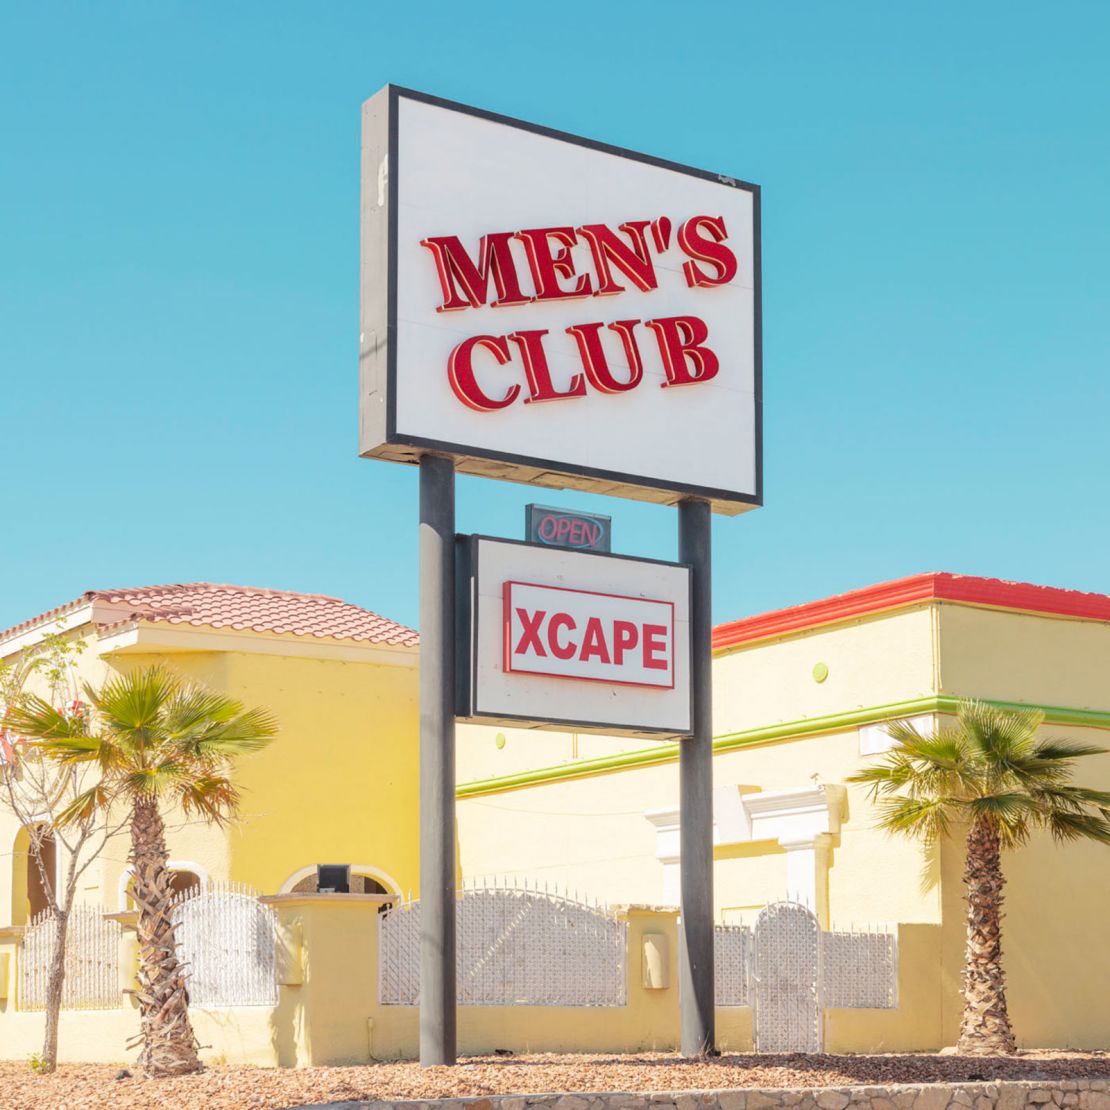 Club de hombres Escape en El Paso, Texas.